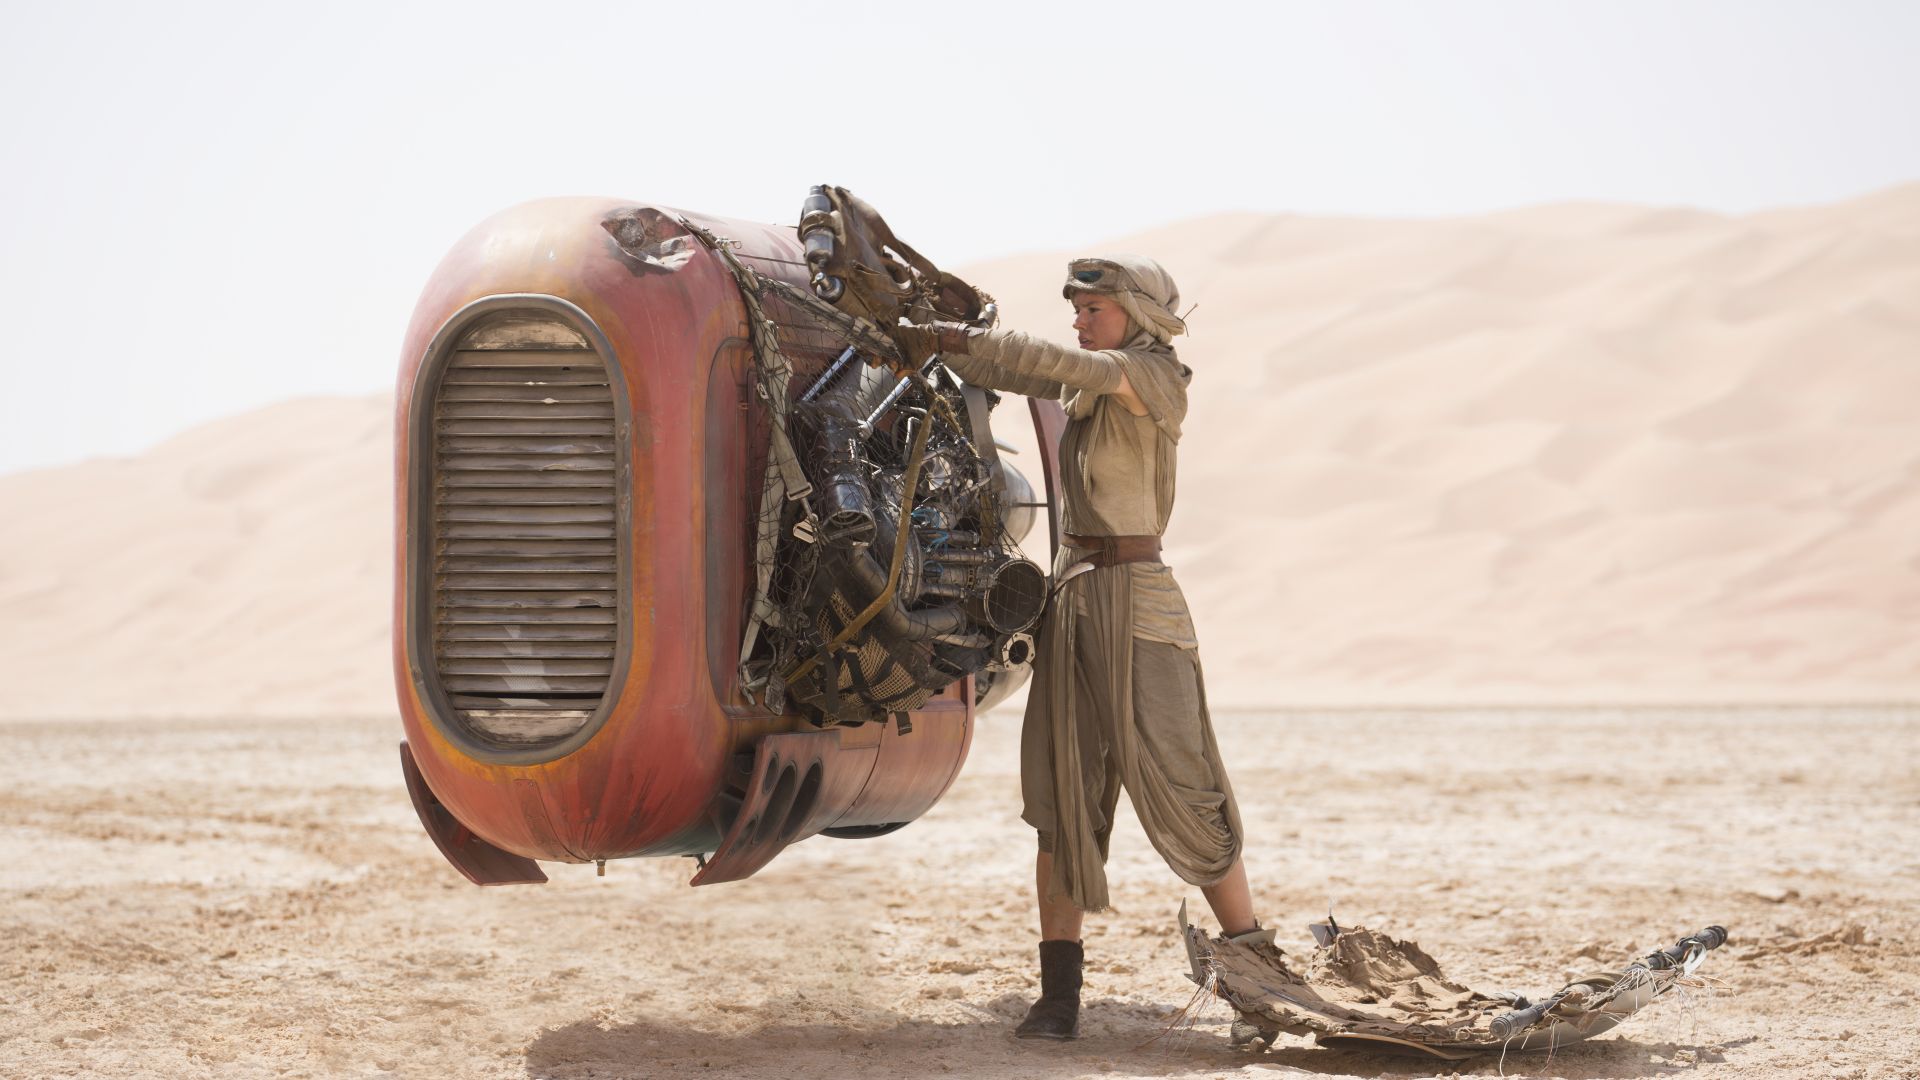 Звёздные войны: Пробуждение силы, Дэйзи Ридли, Star Wars: Episode VII - The Force Awakens, Daisy Ridley (horizontal)